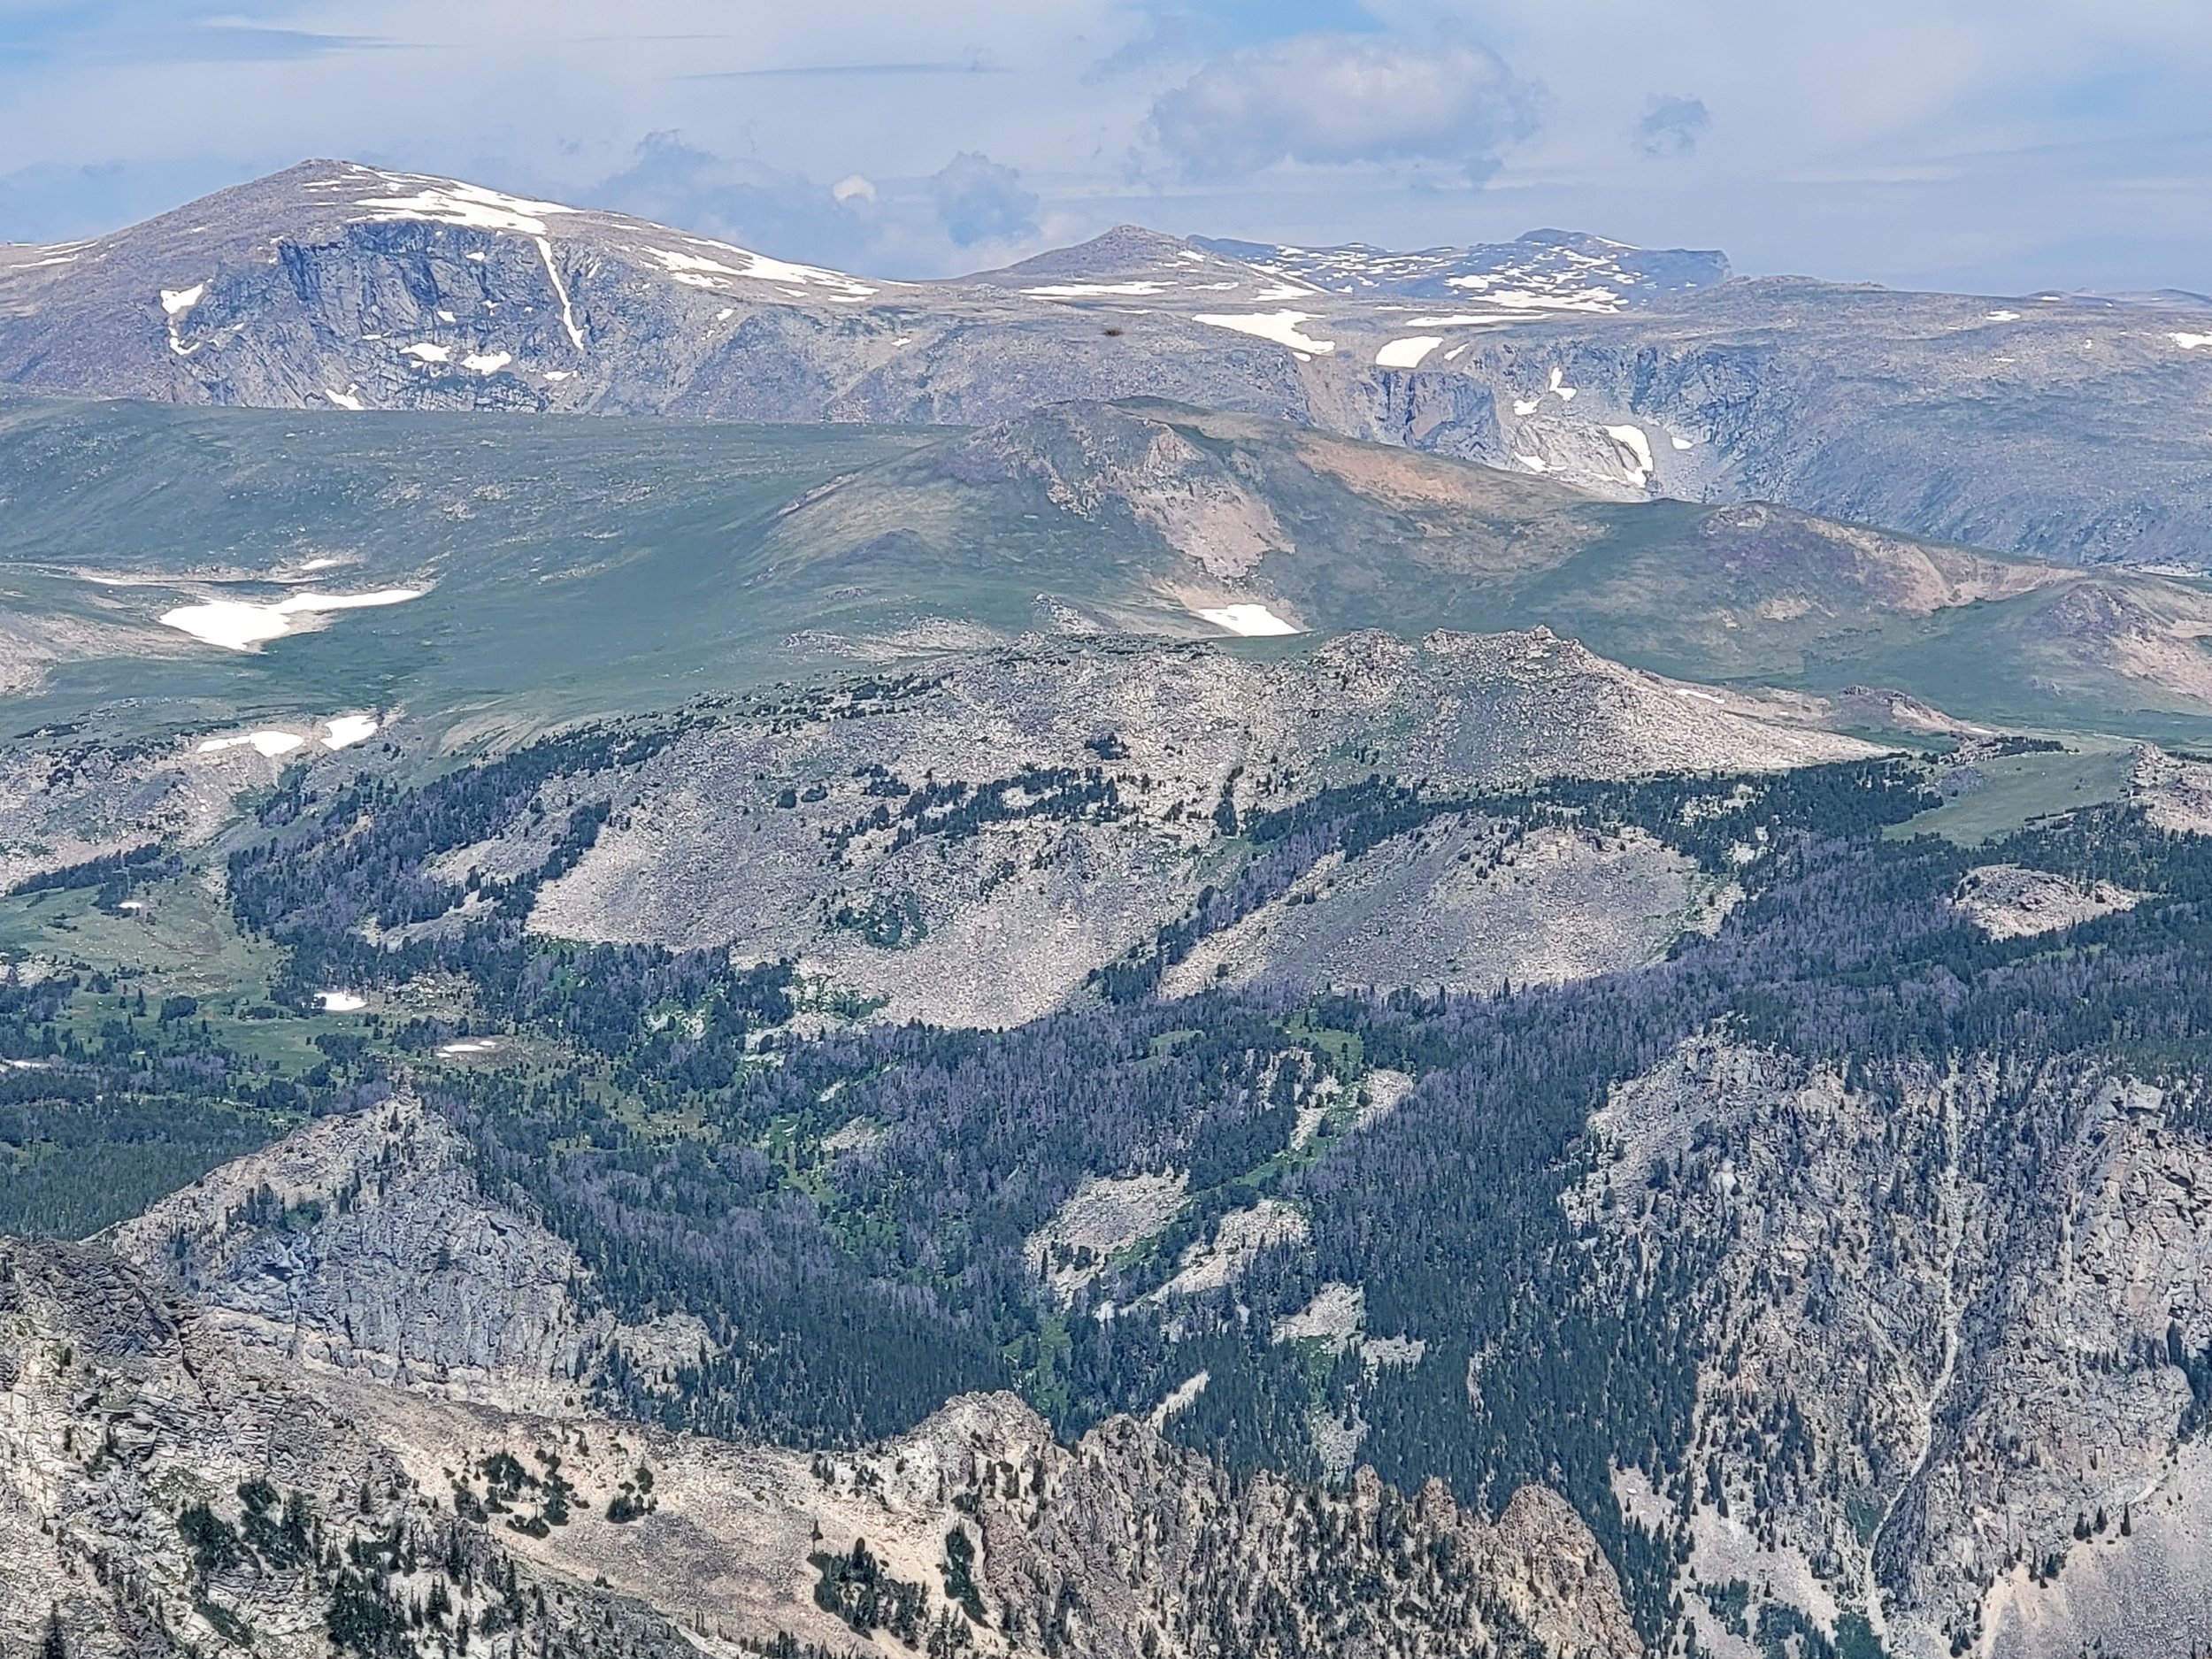 Beartooth Pass, Wyoming/Montana, 2022